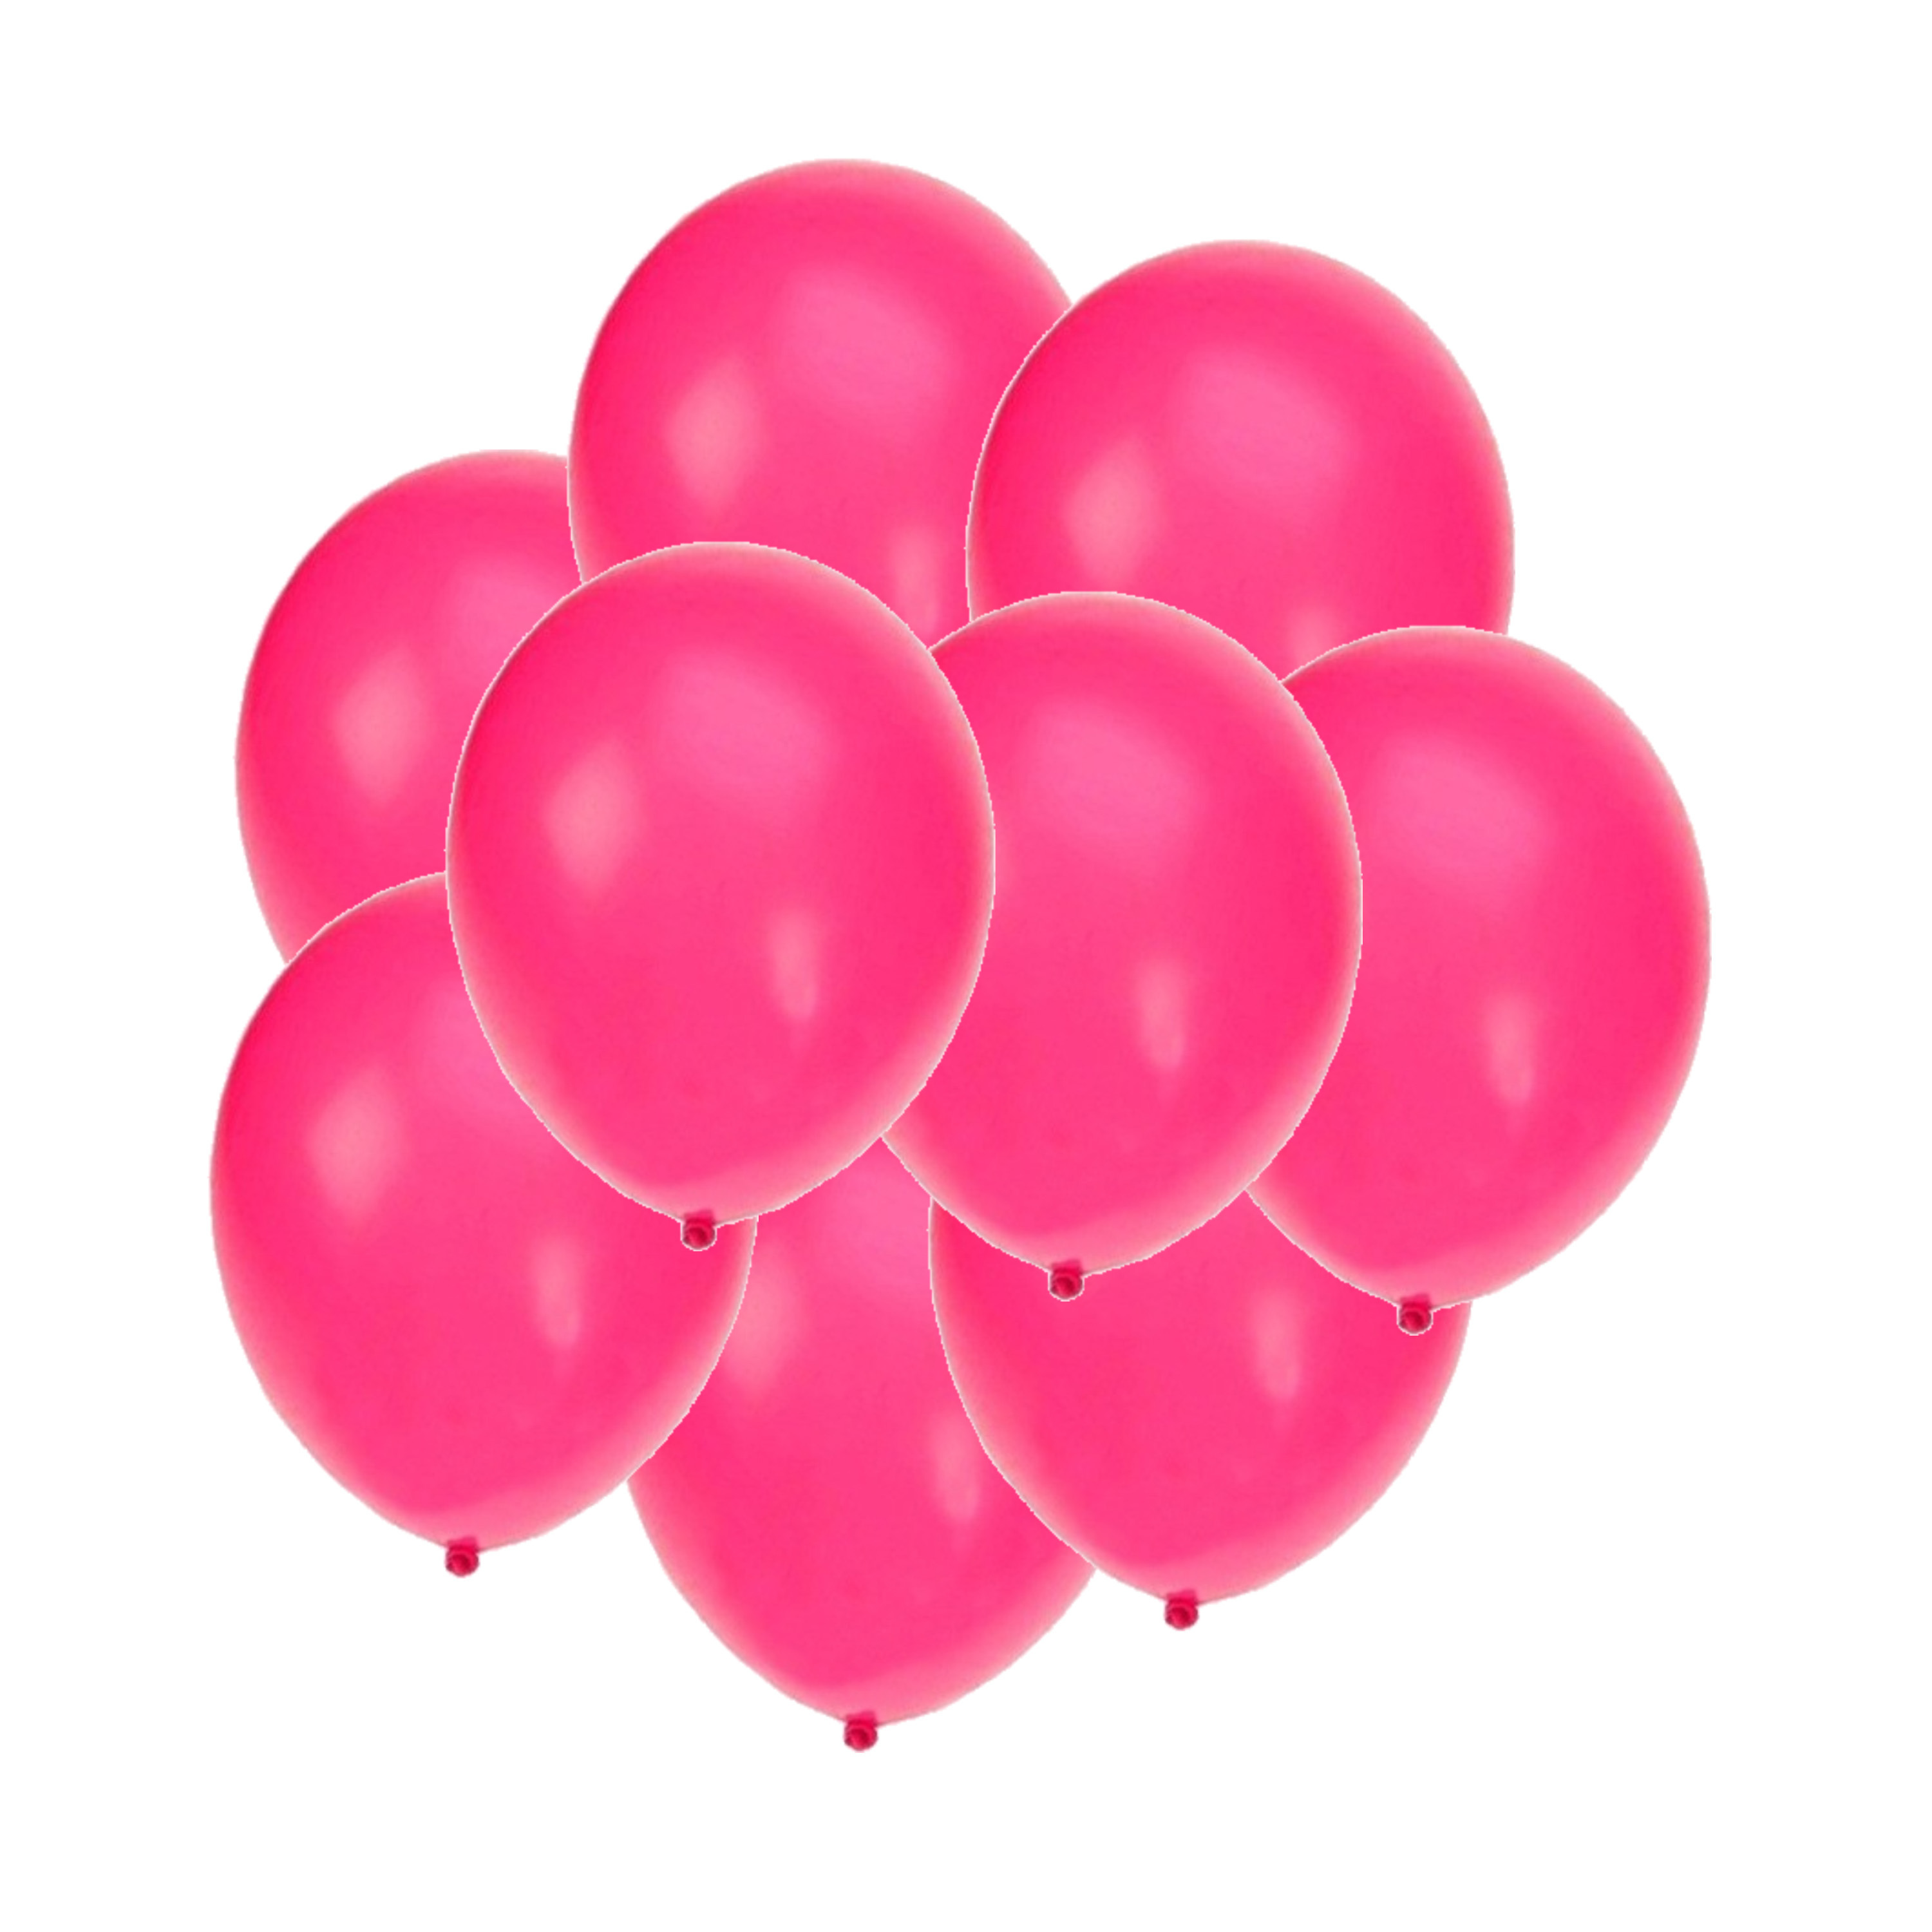 Bellatio decorations - Ballonnen knalroze/felroze 50x stuks rond 27 cm - Top Merken Winkel